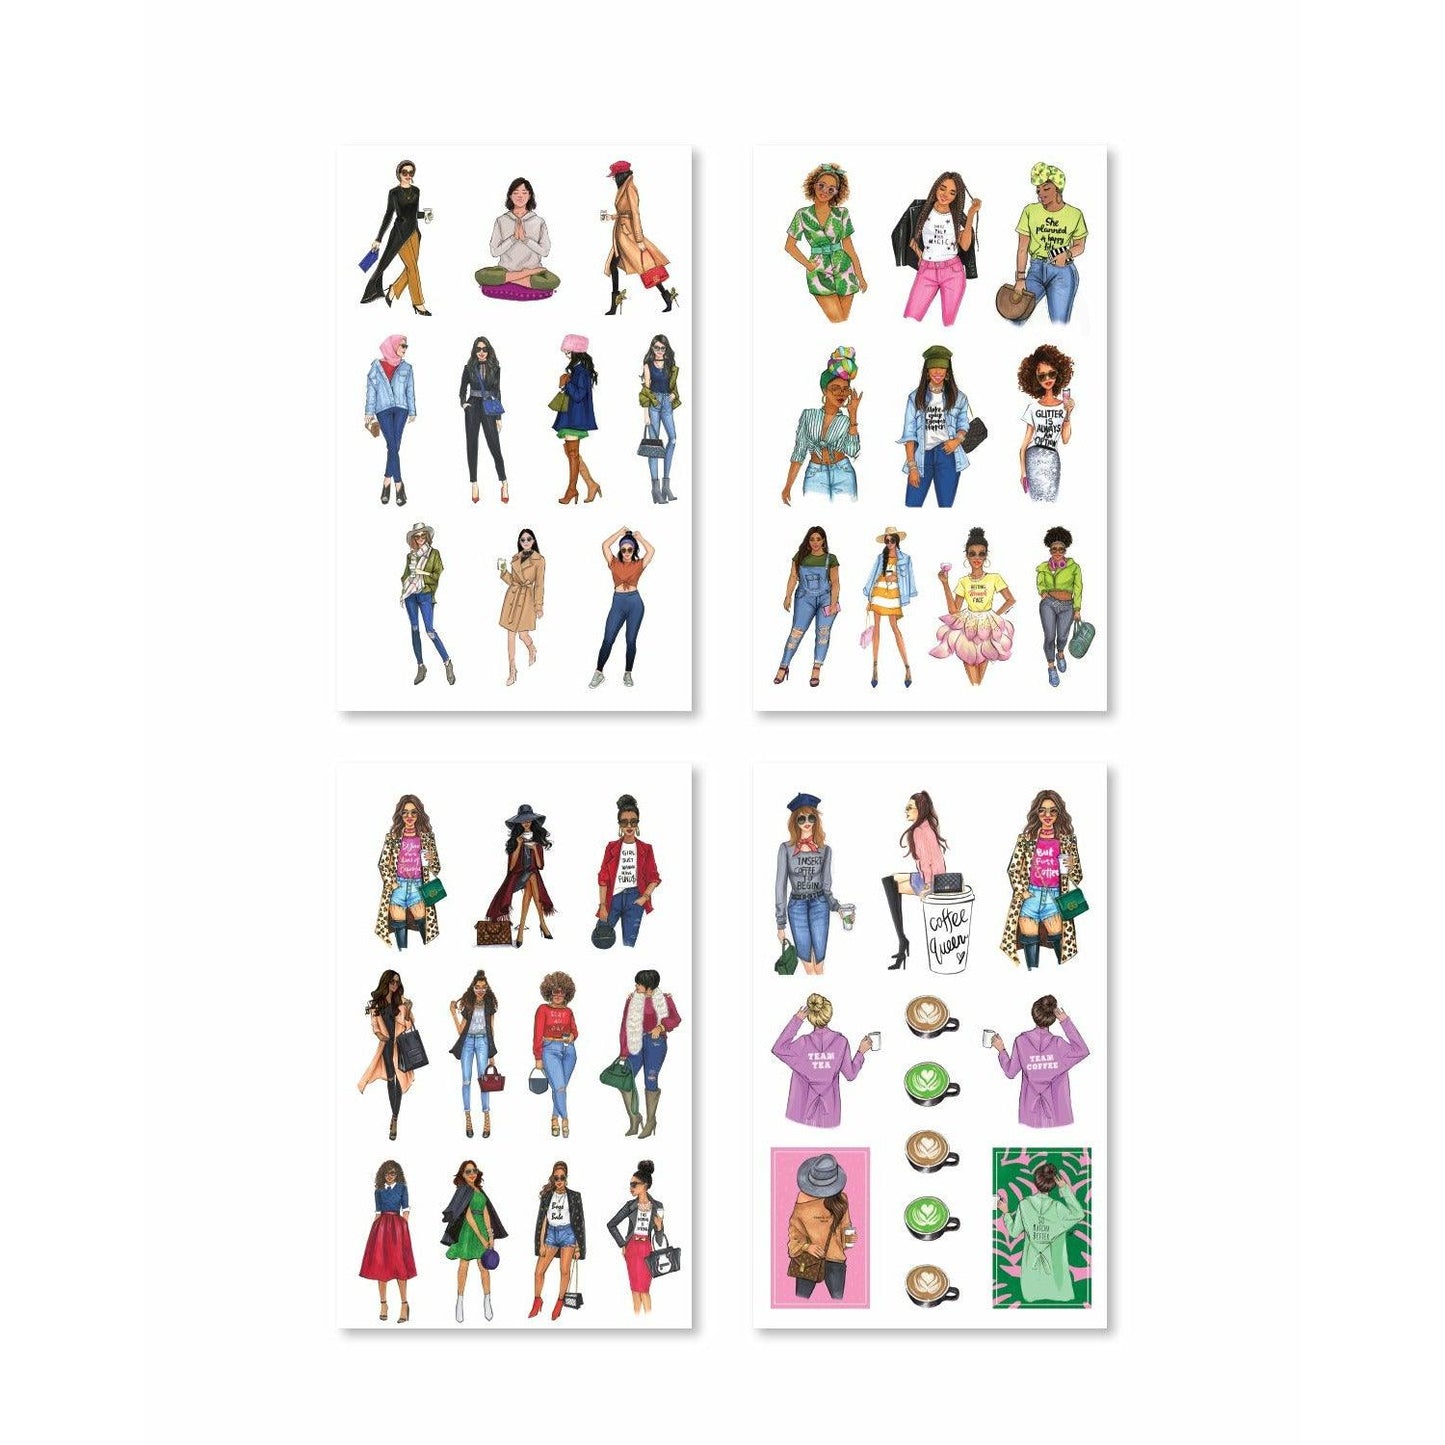 Fashionista Girls Sticker Book (Set of 6)